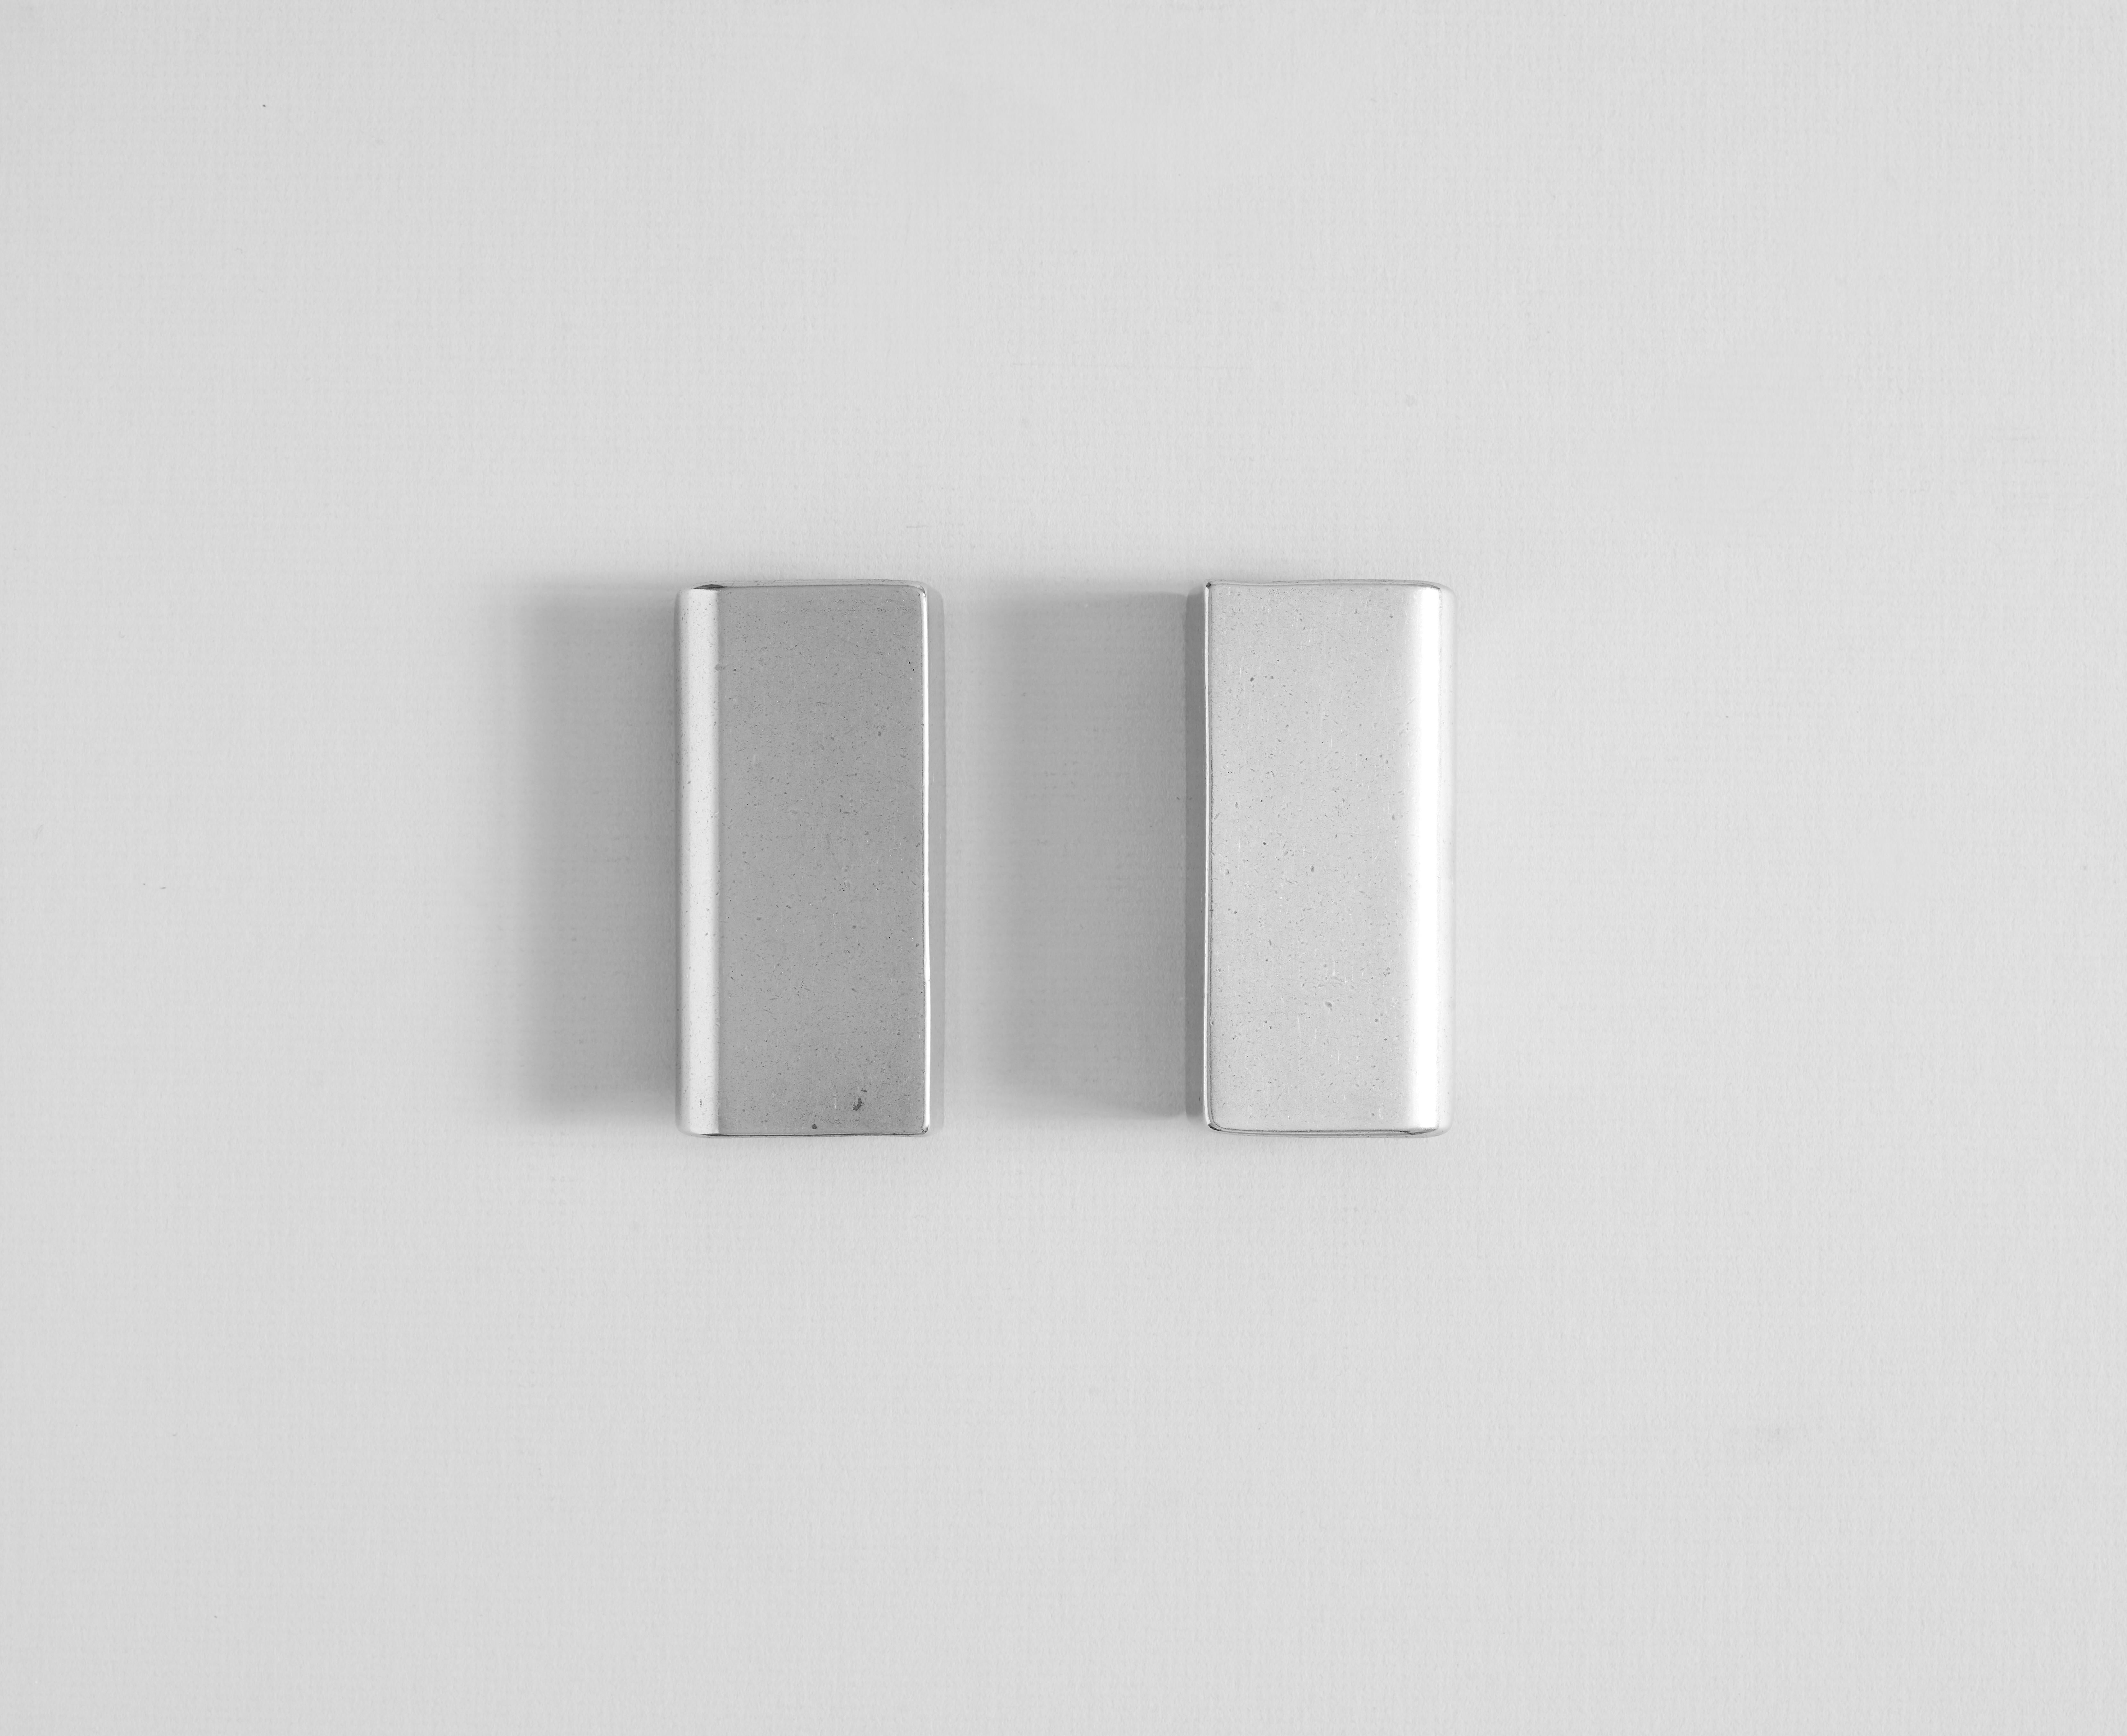 Set von 2 Aluminium-Mini-Kuppelgriffen aus Aluminium von Henry Wilson
Abmessungen: B 5 x T 2 x H 9 cm
MATERIALIEN: Aluminium

Griff aus Aluminium, passend zu den Schränken.

Jedes Stück wird im Sandgussverfahren hergestellt und mit Rumpeln